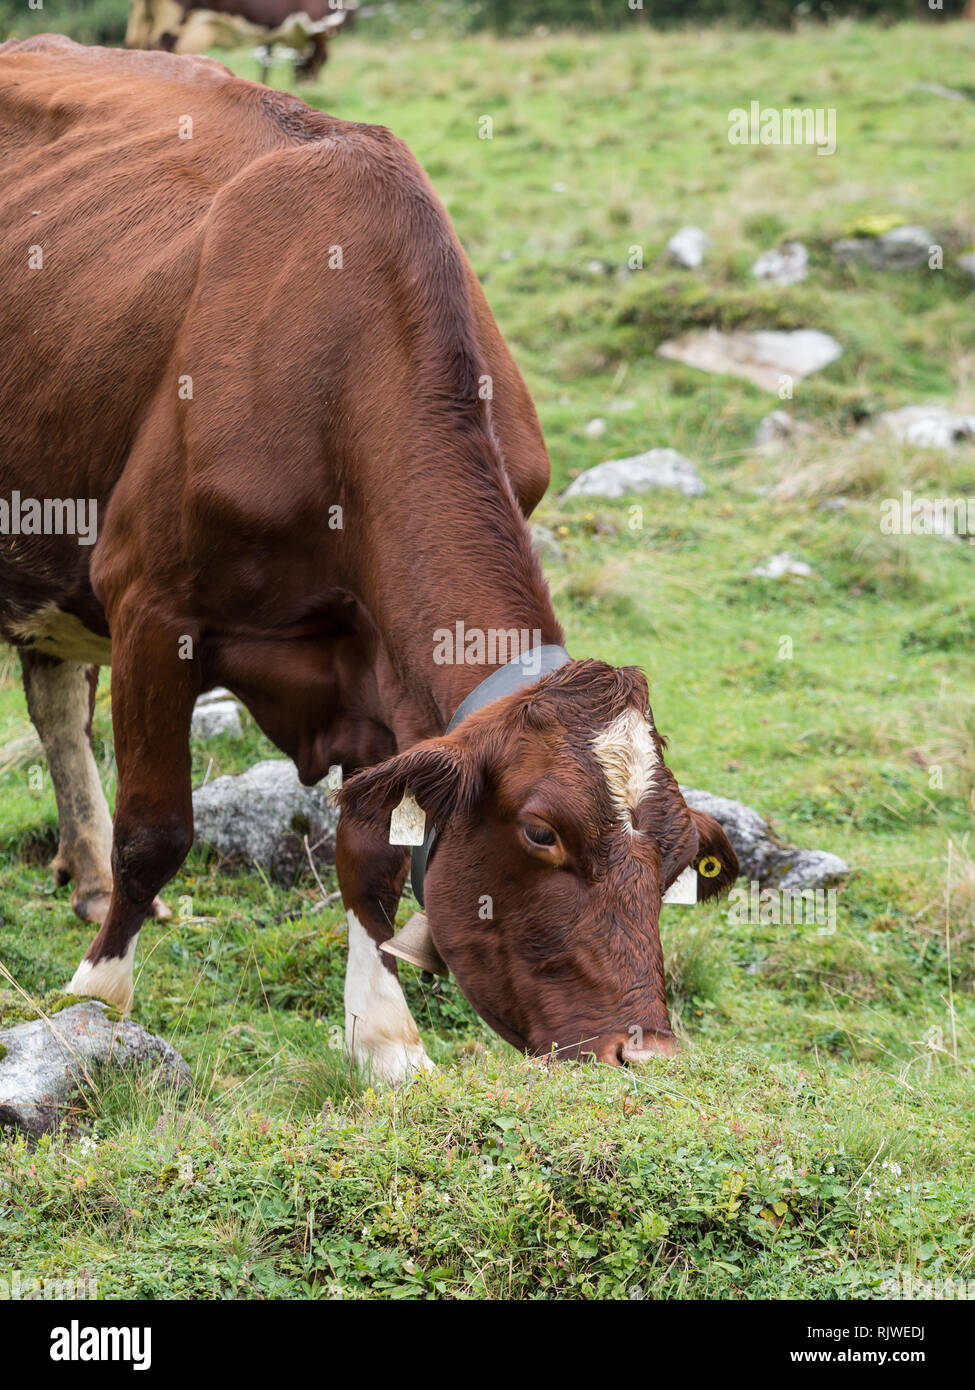 Milk cow on pasture Stock Photo